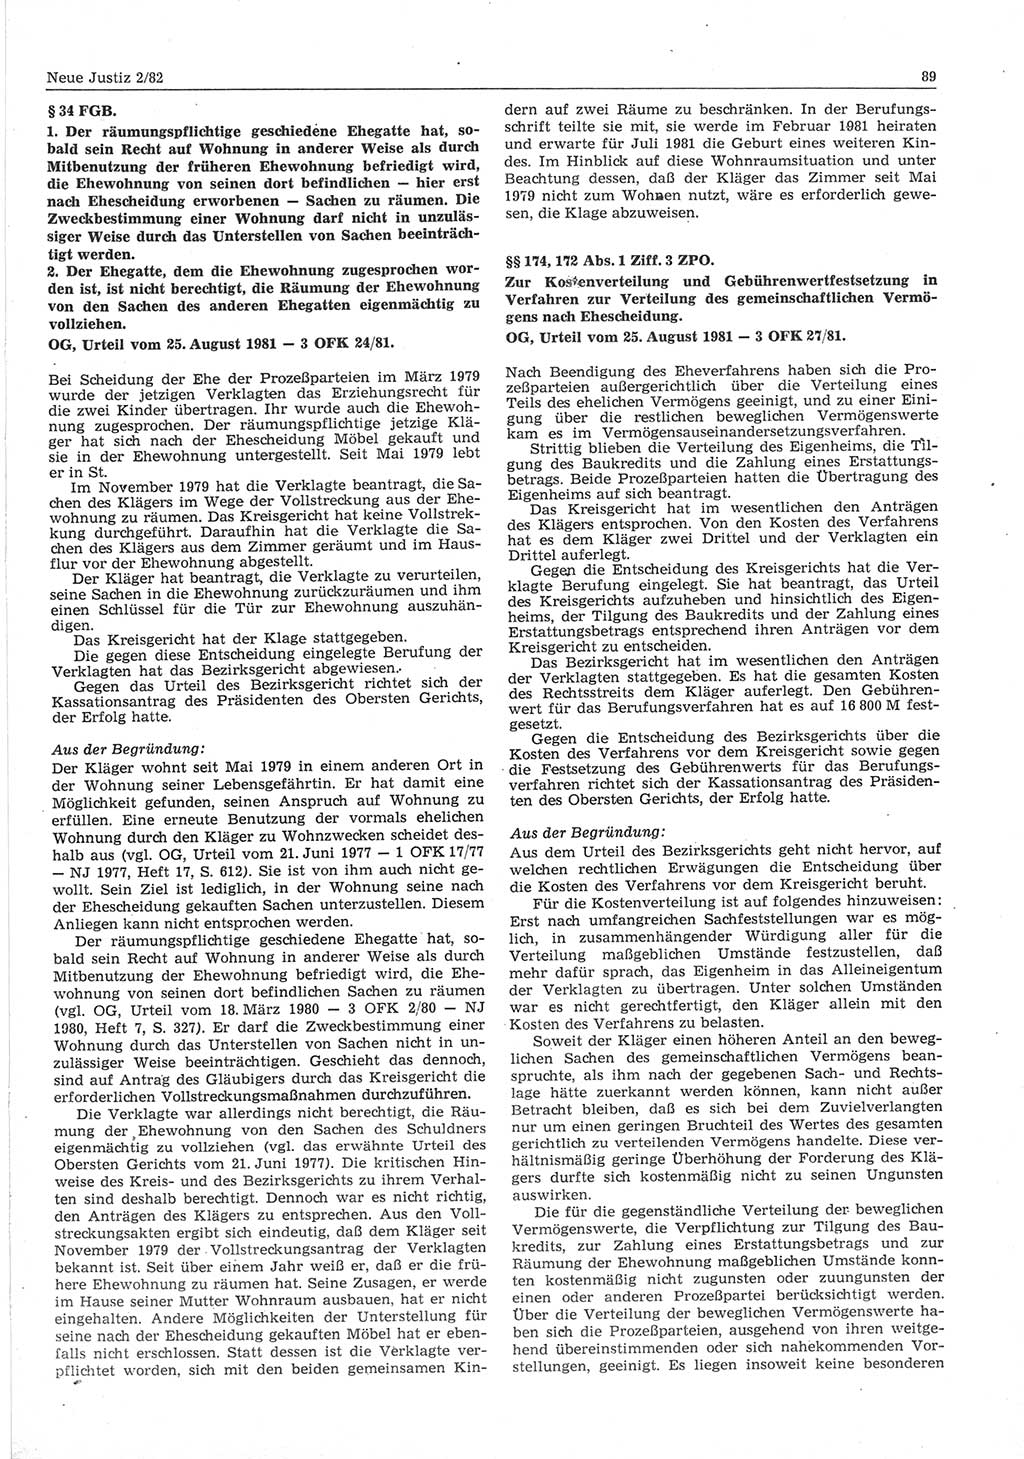 Neue Justiz (NJ), Zeitschrift für sozialistisches Recht und Gesetzlichkeit [Deutsche Demokratische Republik (DDR)], 36. Jahrgang 1982, Seite 89 (NJ DDR 1982, S. 89)